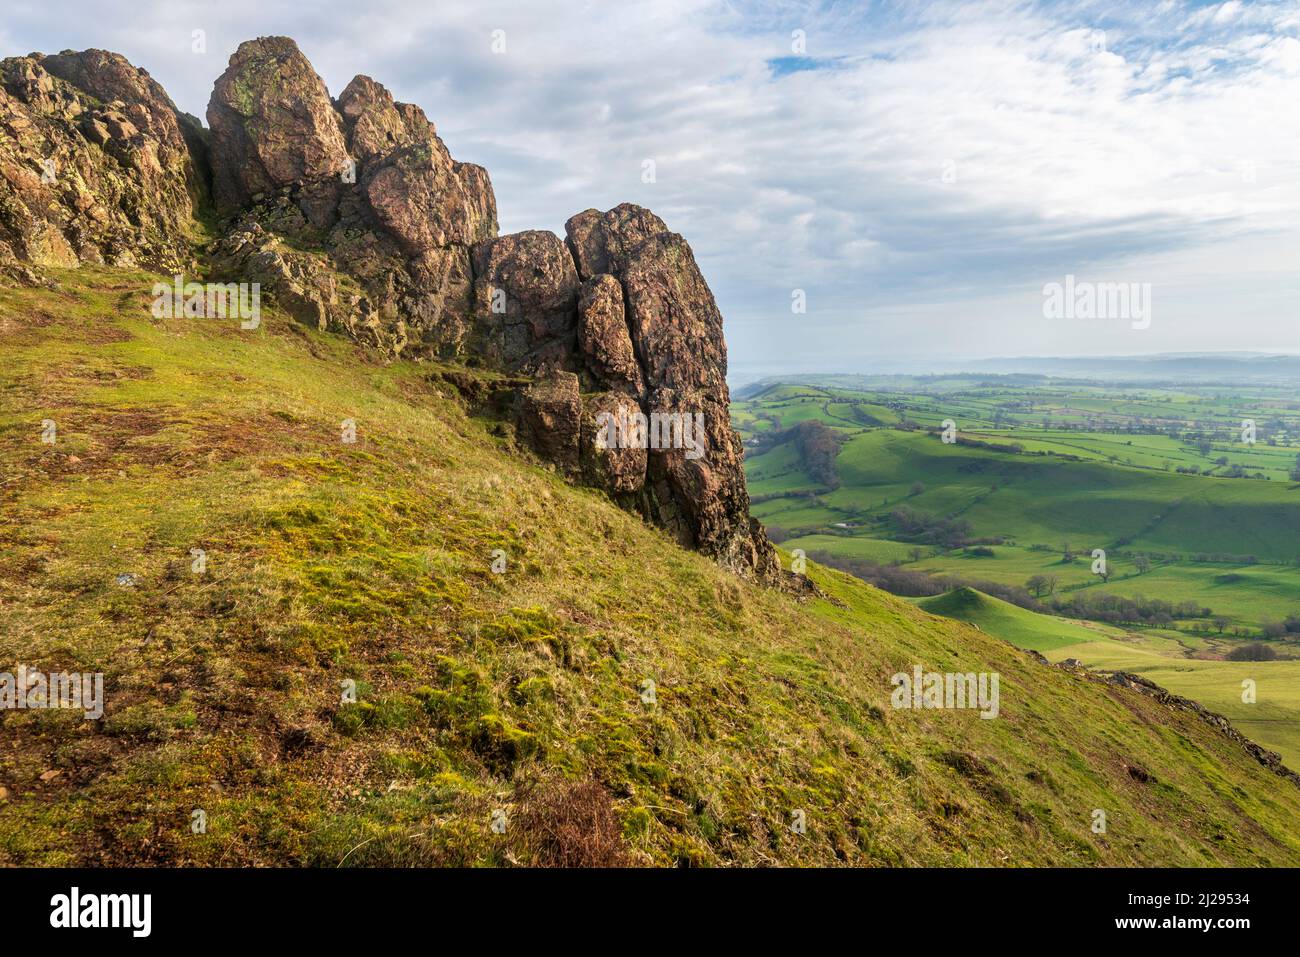 Rocce enormi che si affacciano sulla campagna dello Shropshire all'alba, paesaggio roccioso e colline coperte di erba, paesaggio suggestivo dalla collina ventosa. Foto Stock